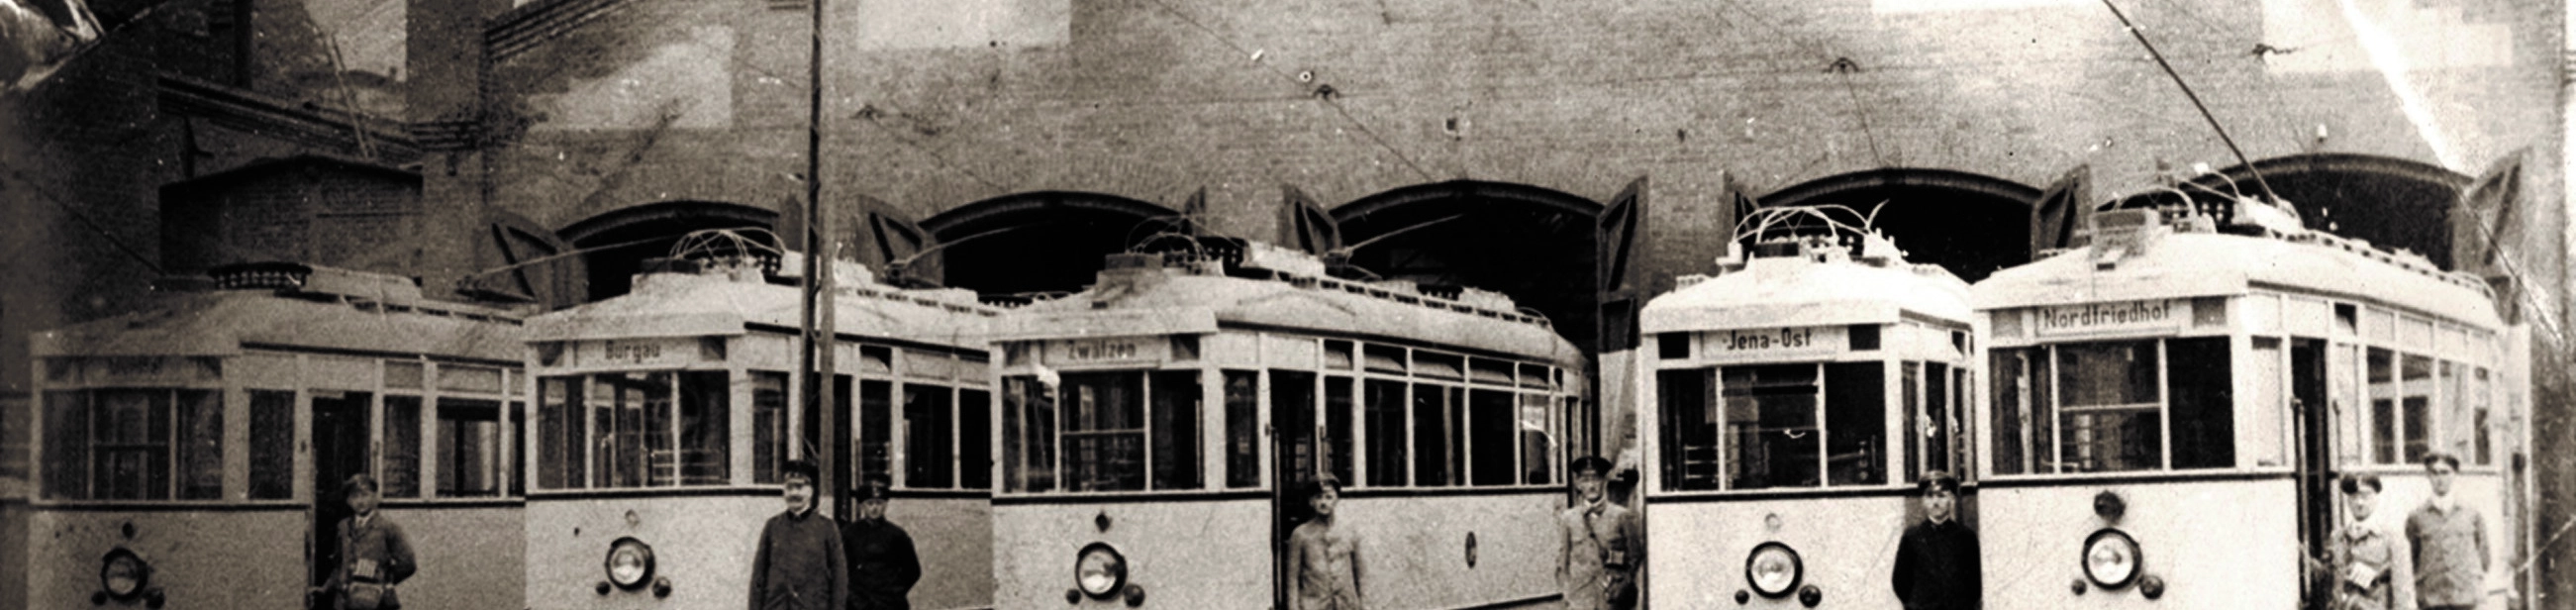 Historische Bahnen in der 1930er Jahren vor dem Alten Straßenbahndepot